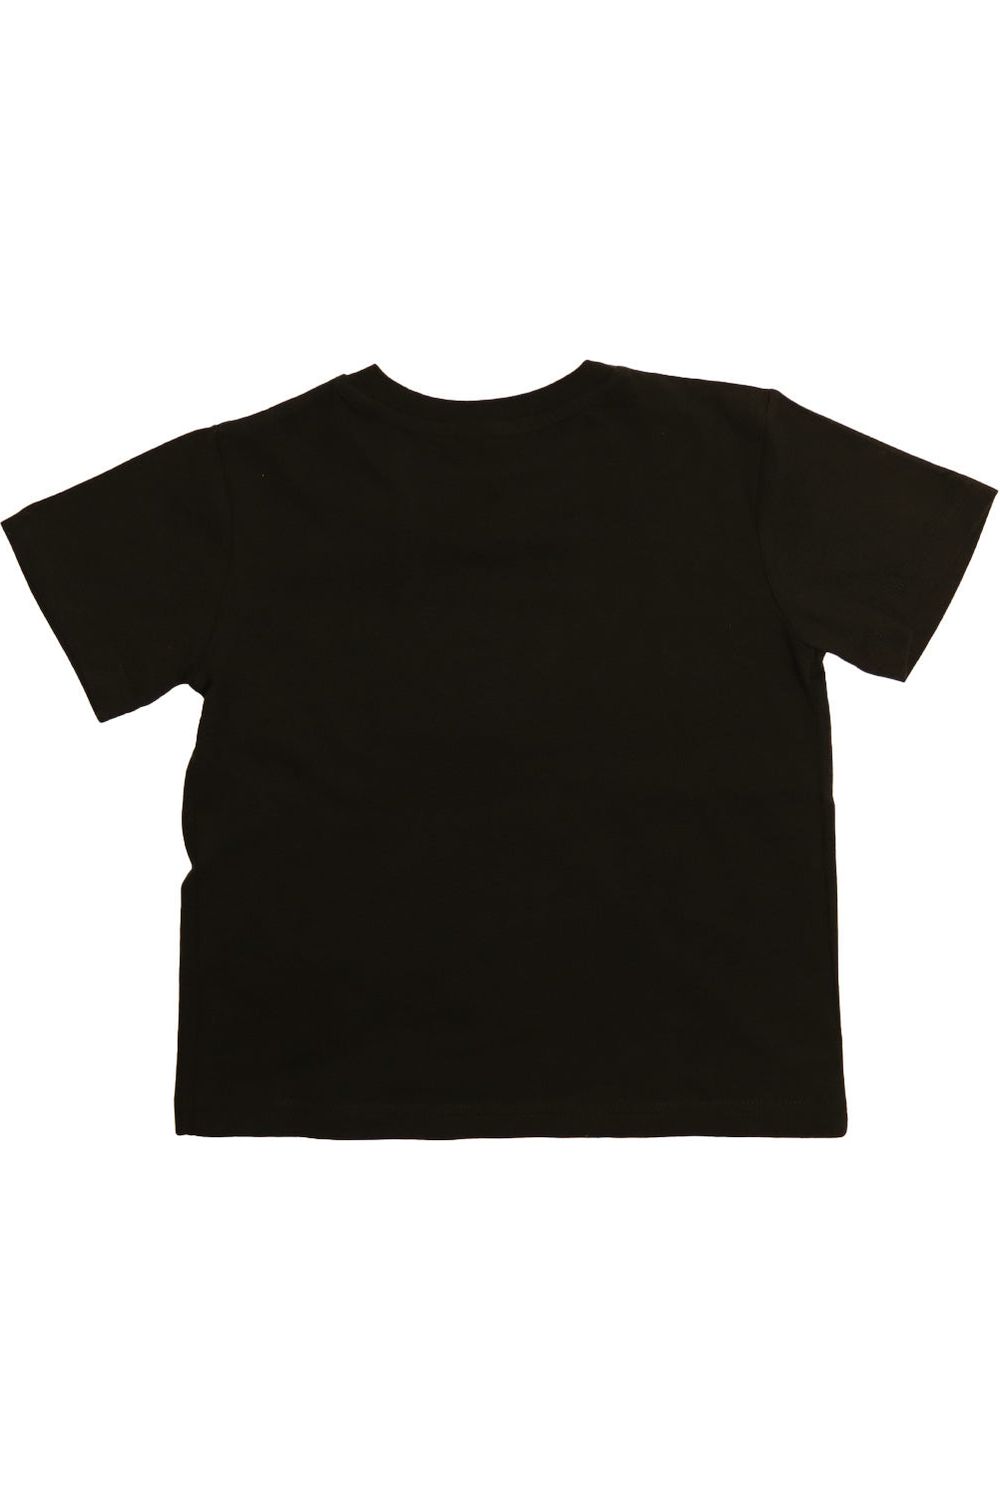 Tiki Man Youth Short Sleeve T-Shirt Black